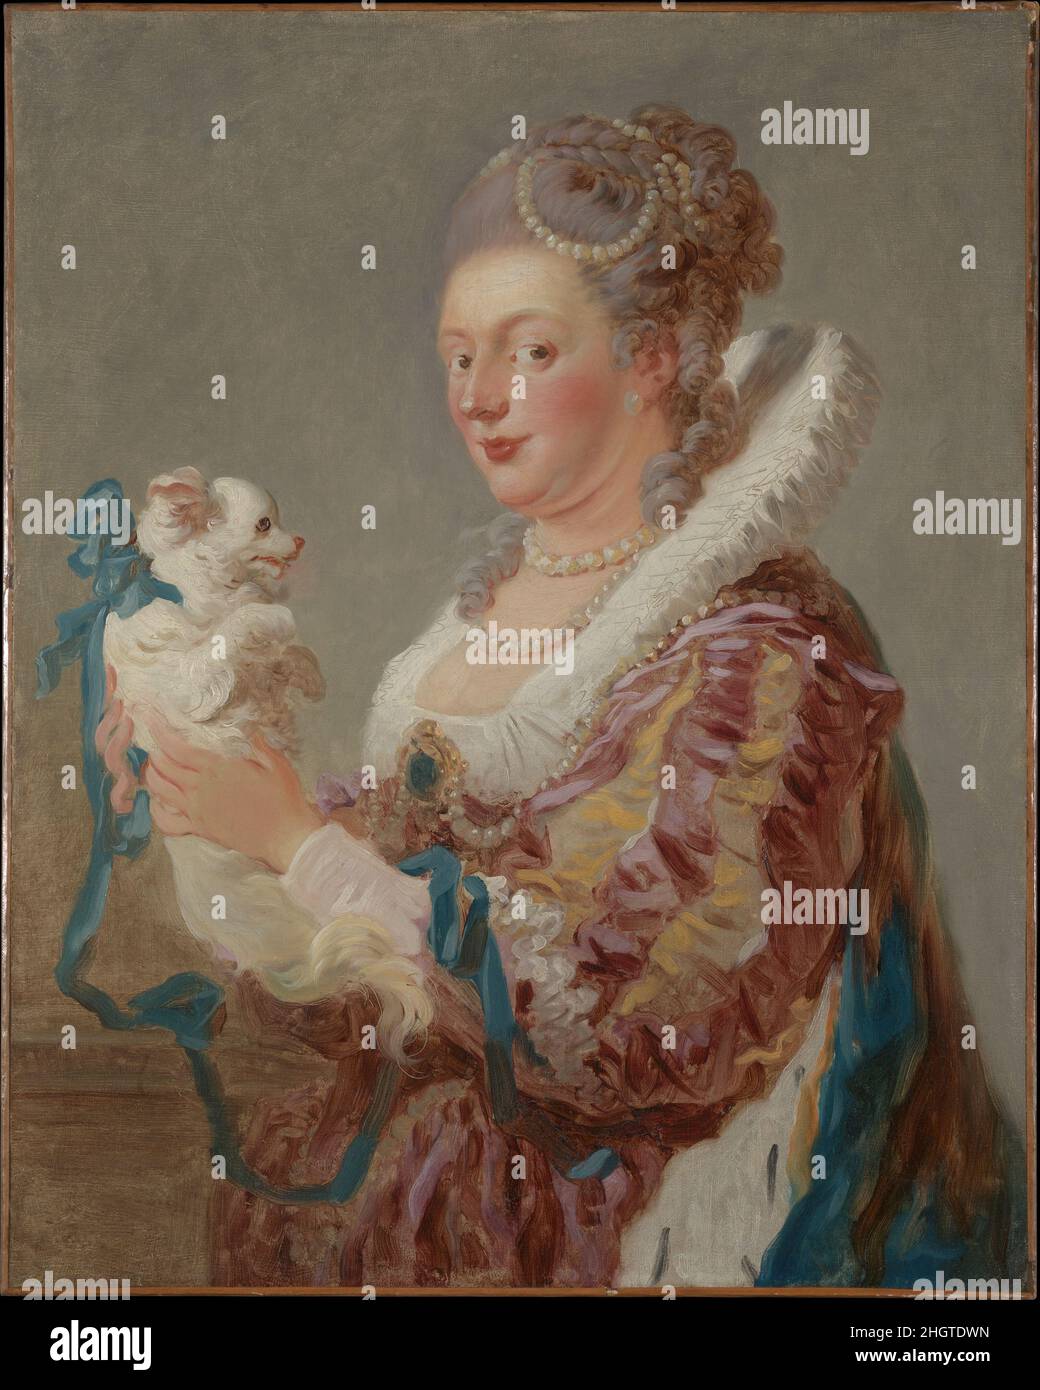 Una mujer con un perro ca. 1769 Jean Honoré Fragonard French Esta pintura  pertenece a un grupo de fragondos conocidos como figuras de fantasía. El  lienzo está ampliamente cepillado, con una virtuosidad